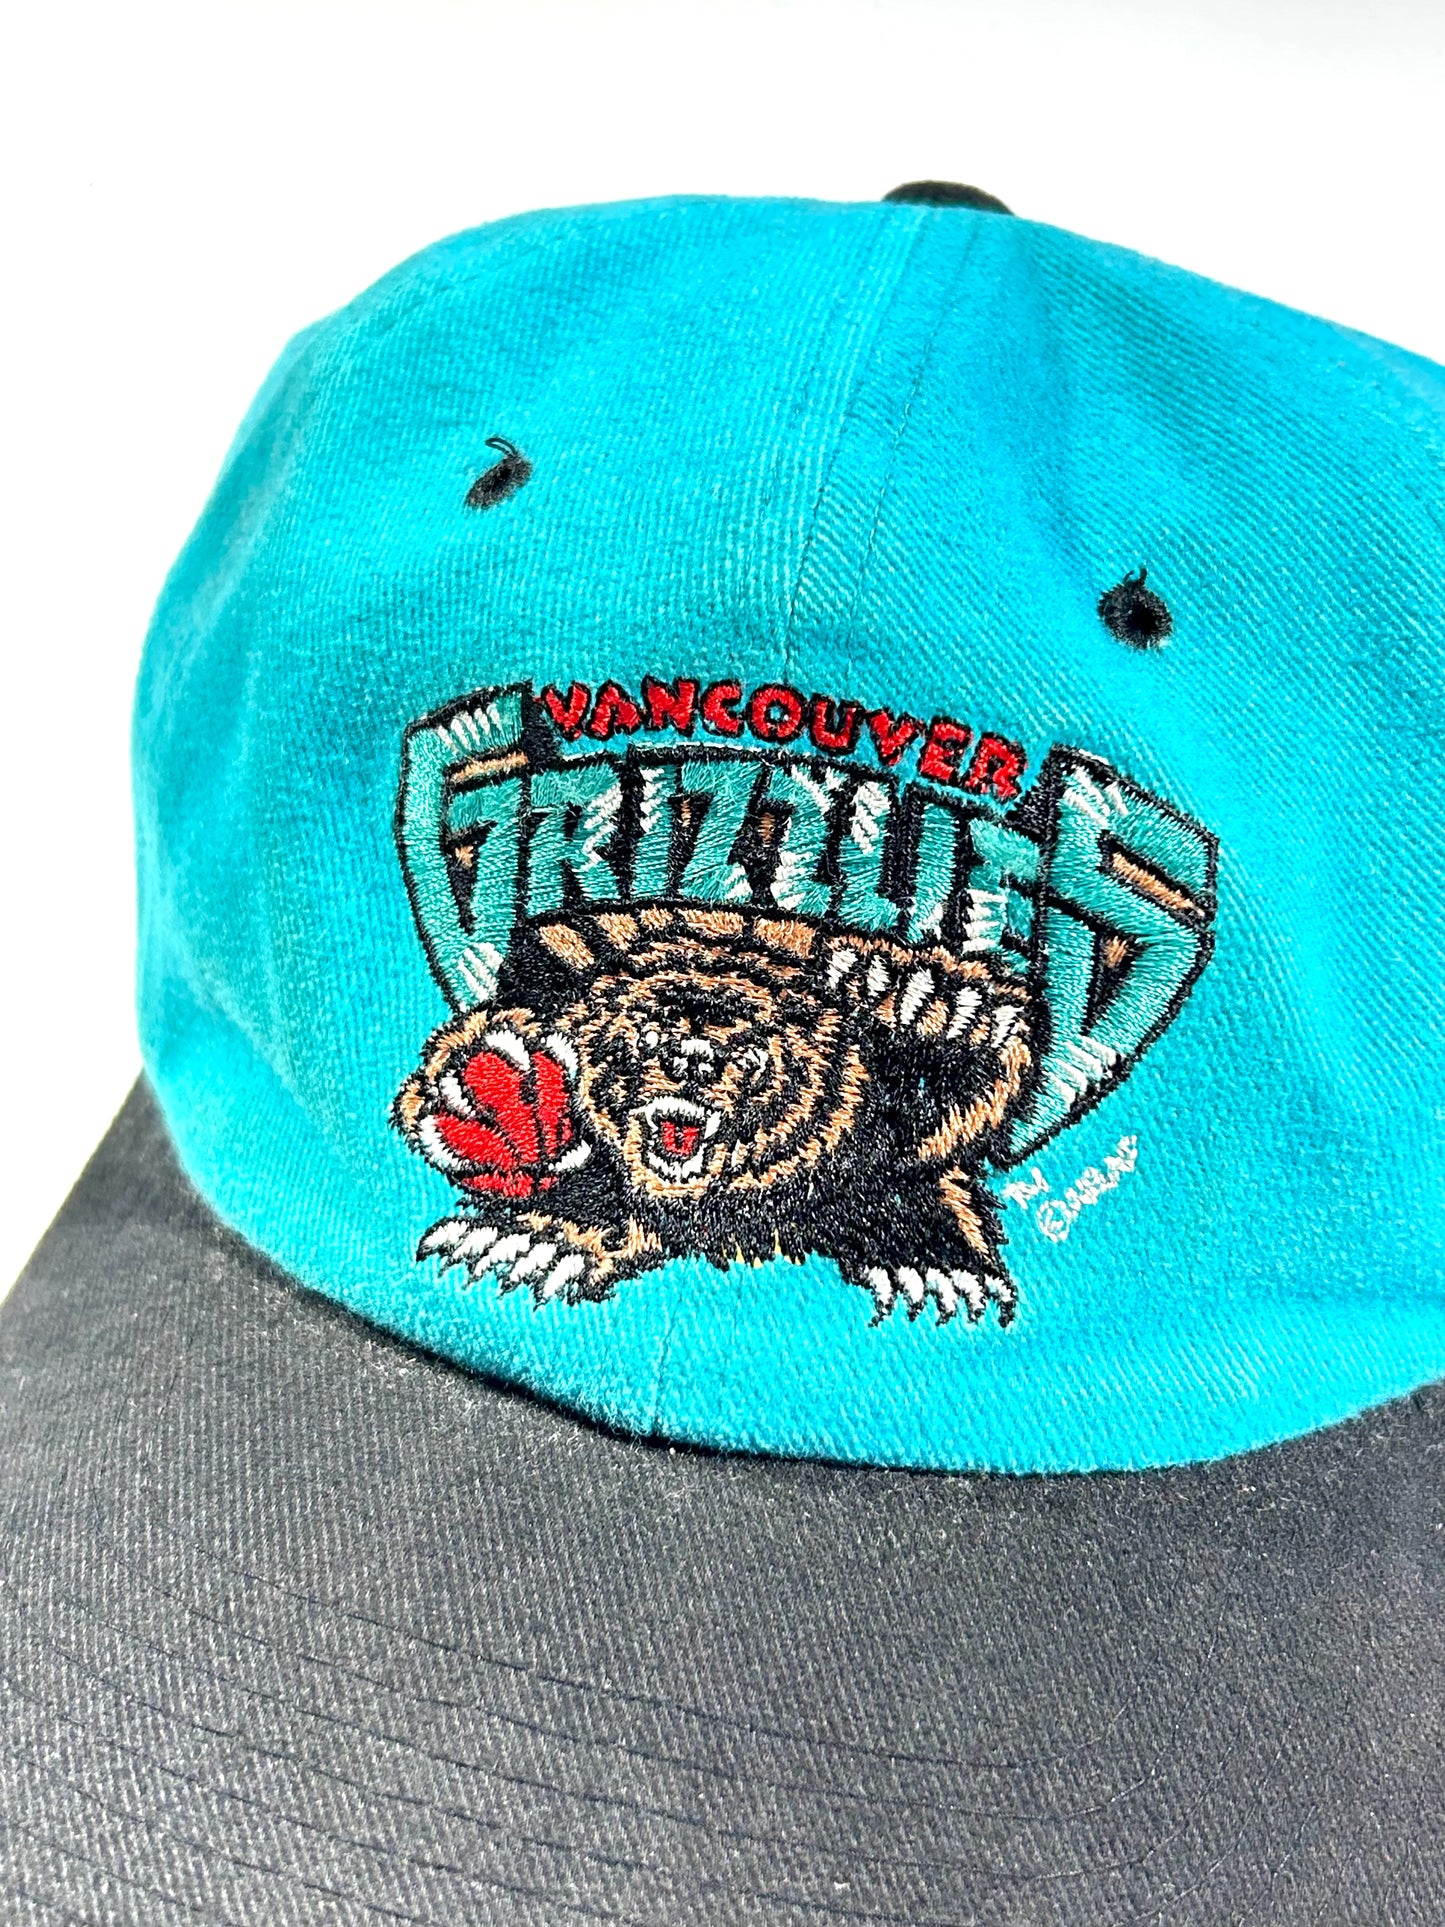 Vintage Vancouver Grizzlies Hat